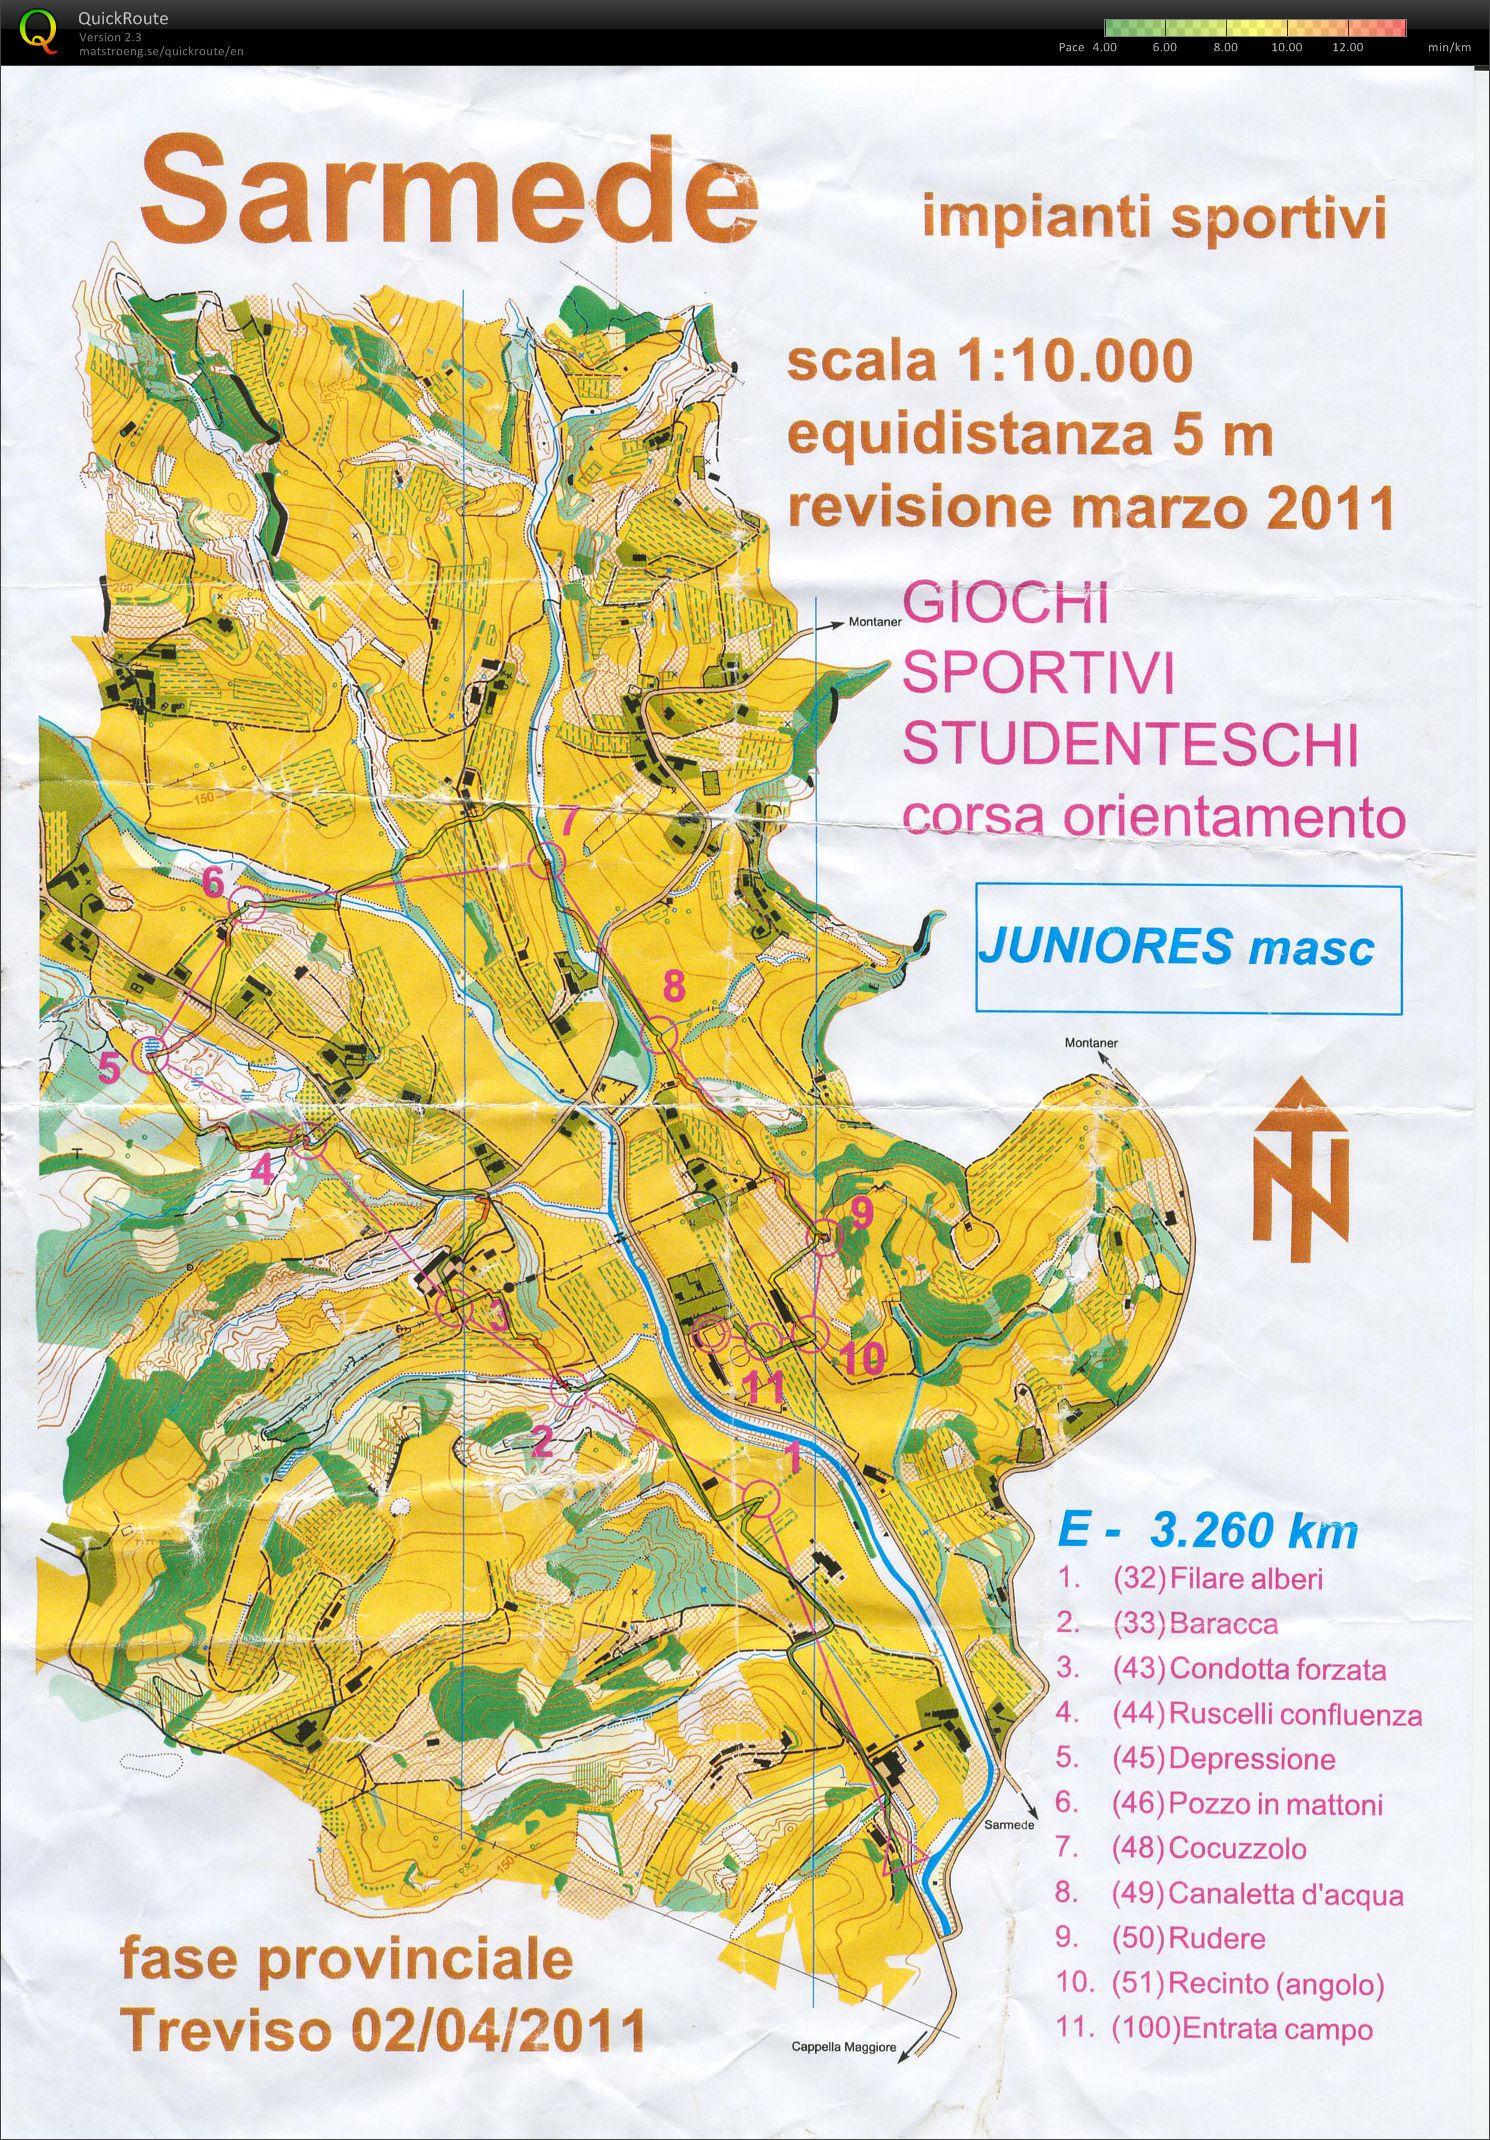 GSS fase provinciale di Treviso (02/04/2011)